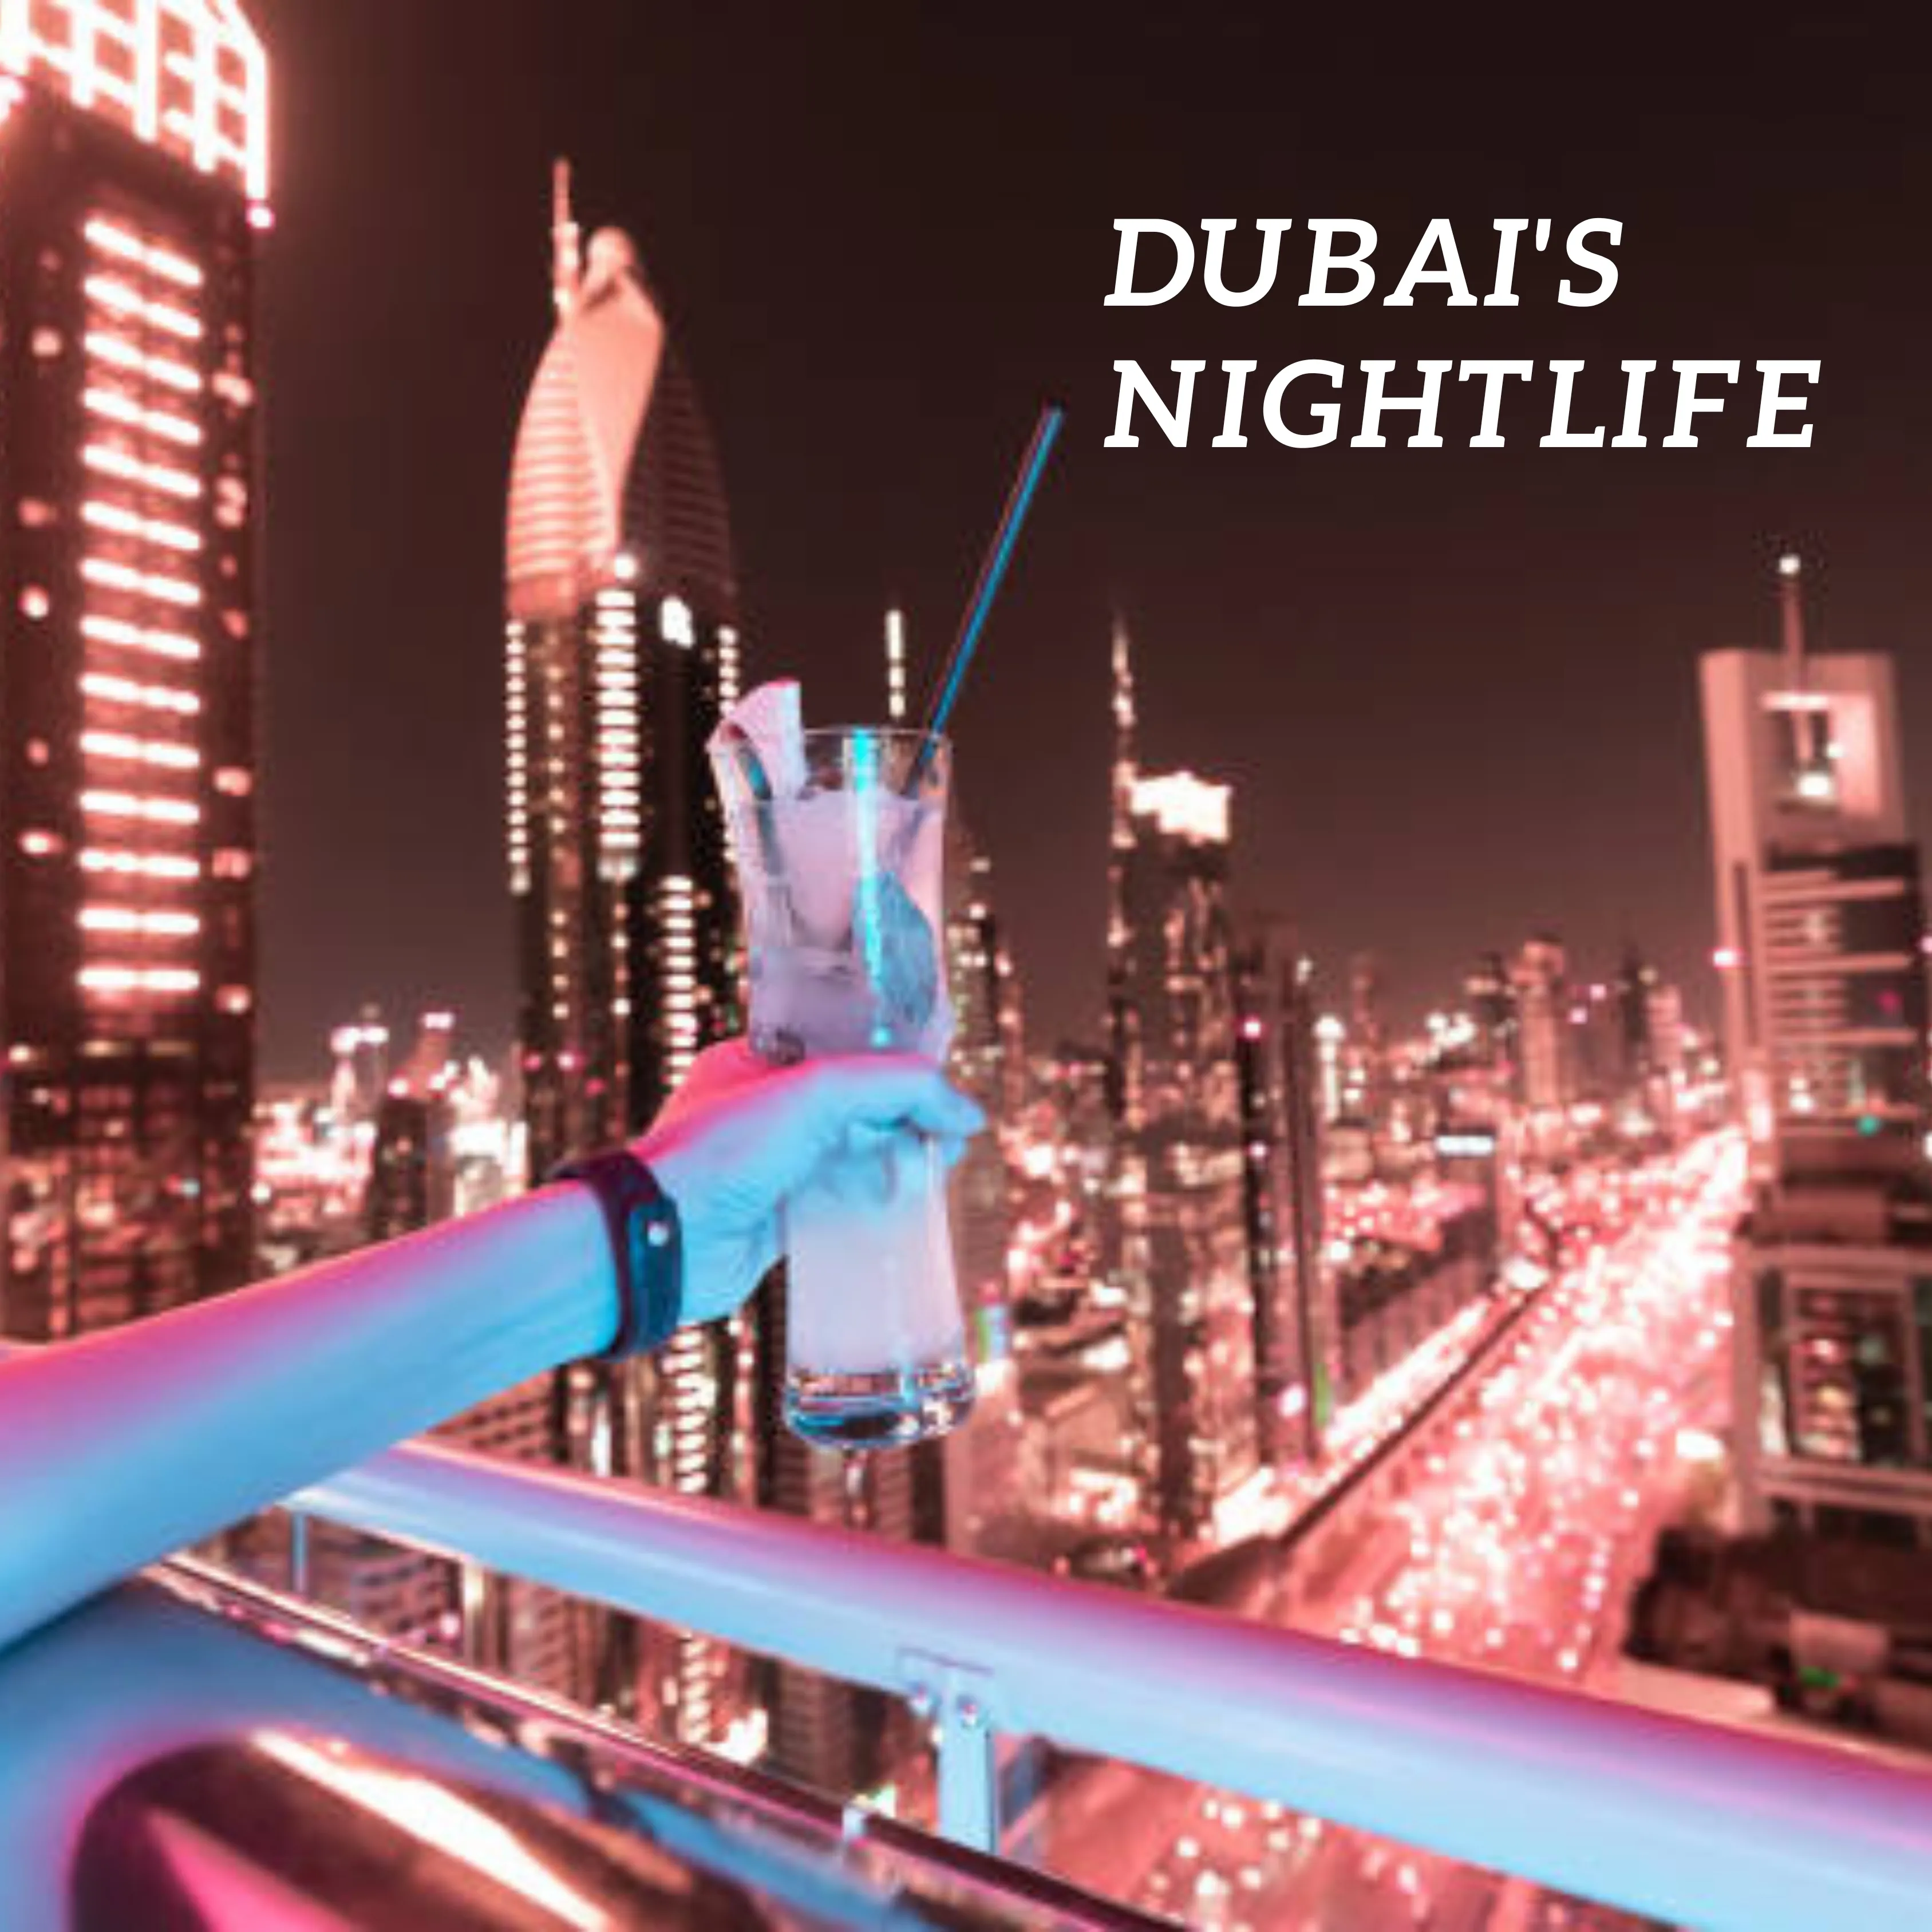 BEST NIGHTLIFE ACTIVITIES IN DUBAI